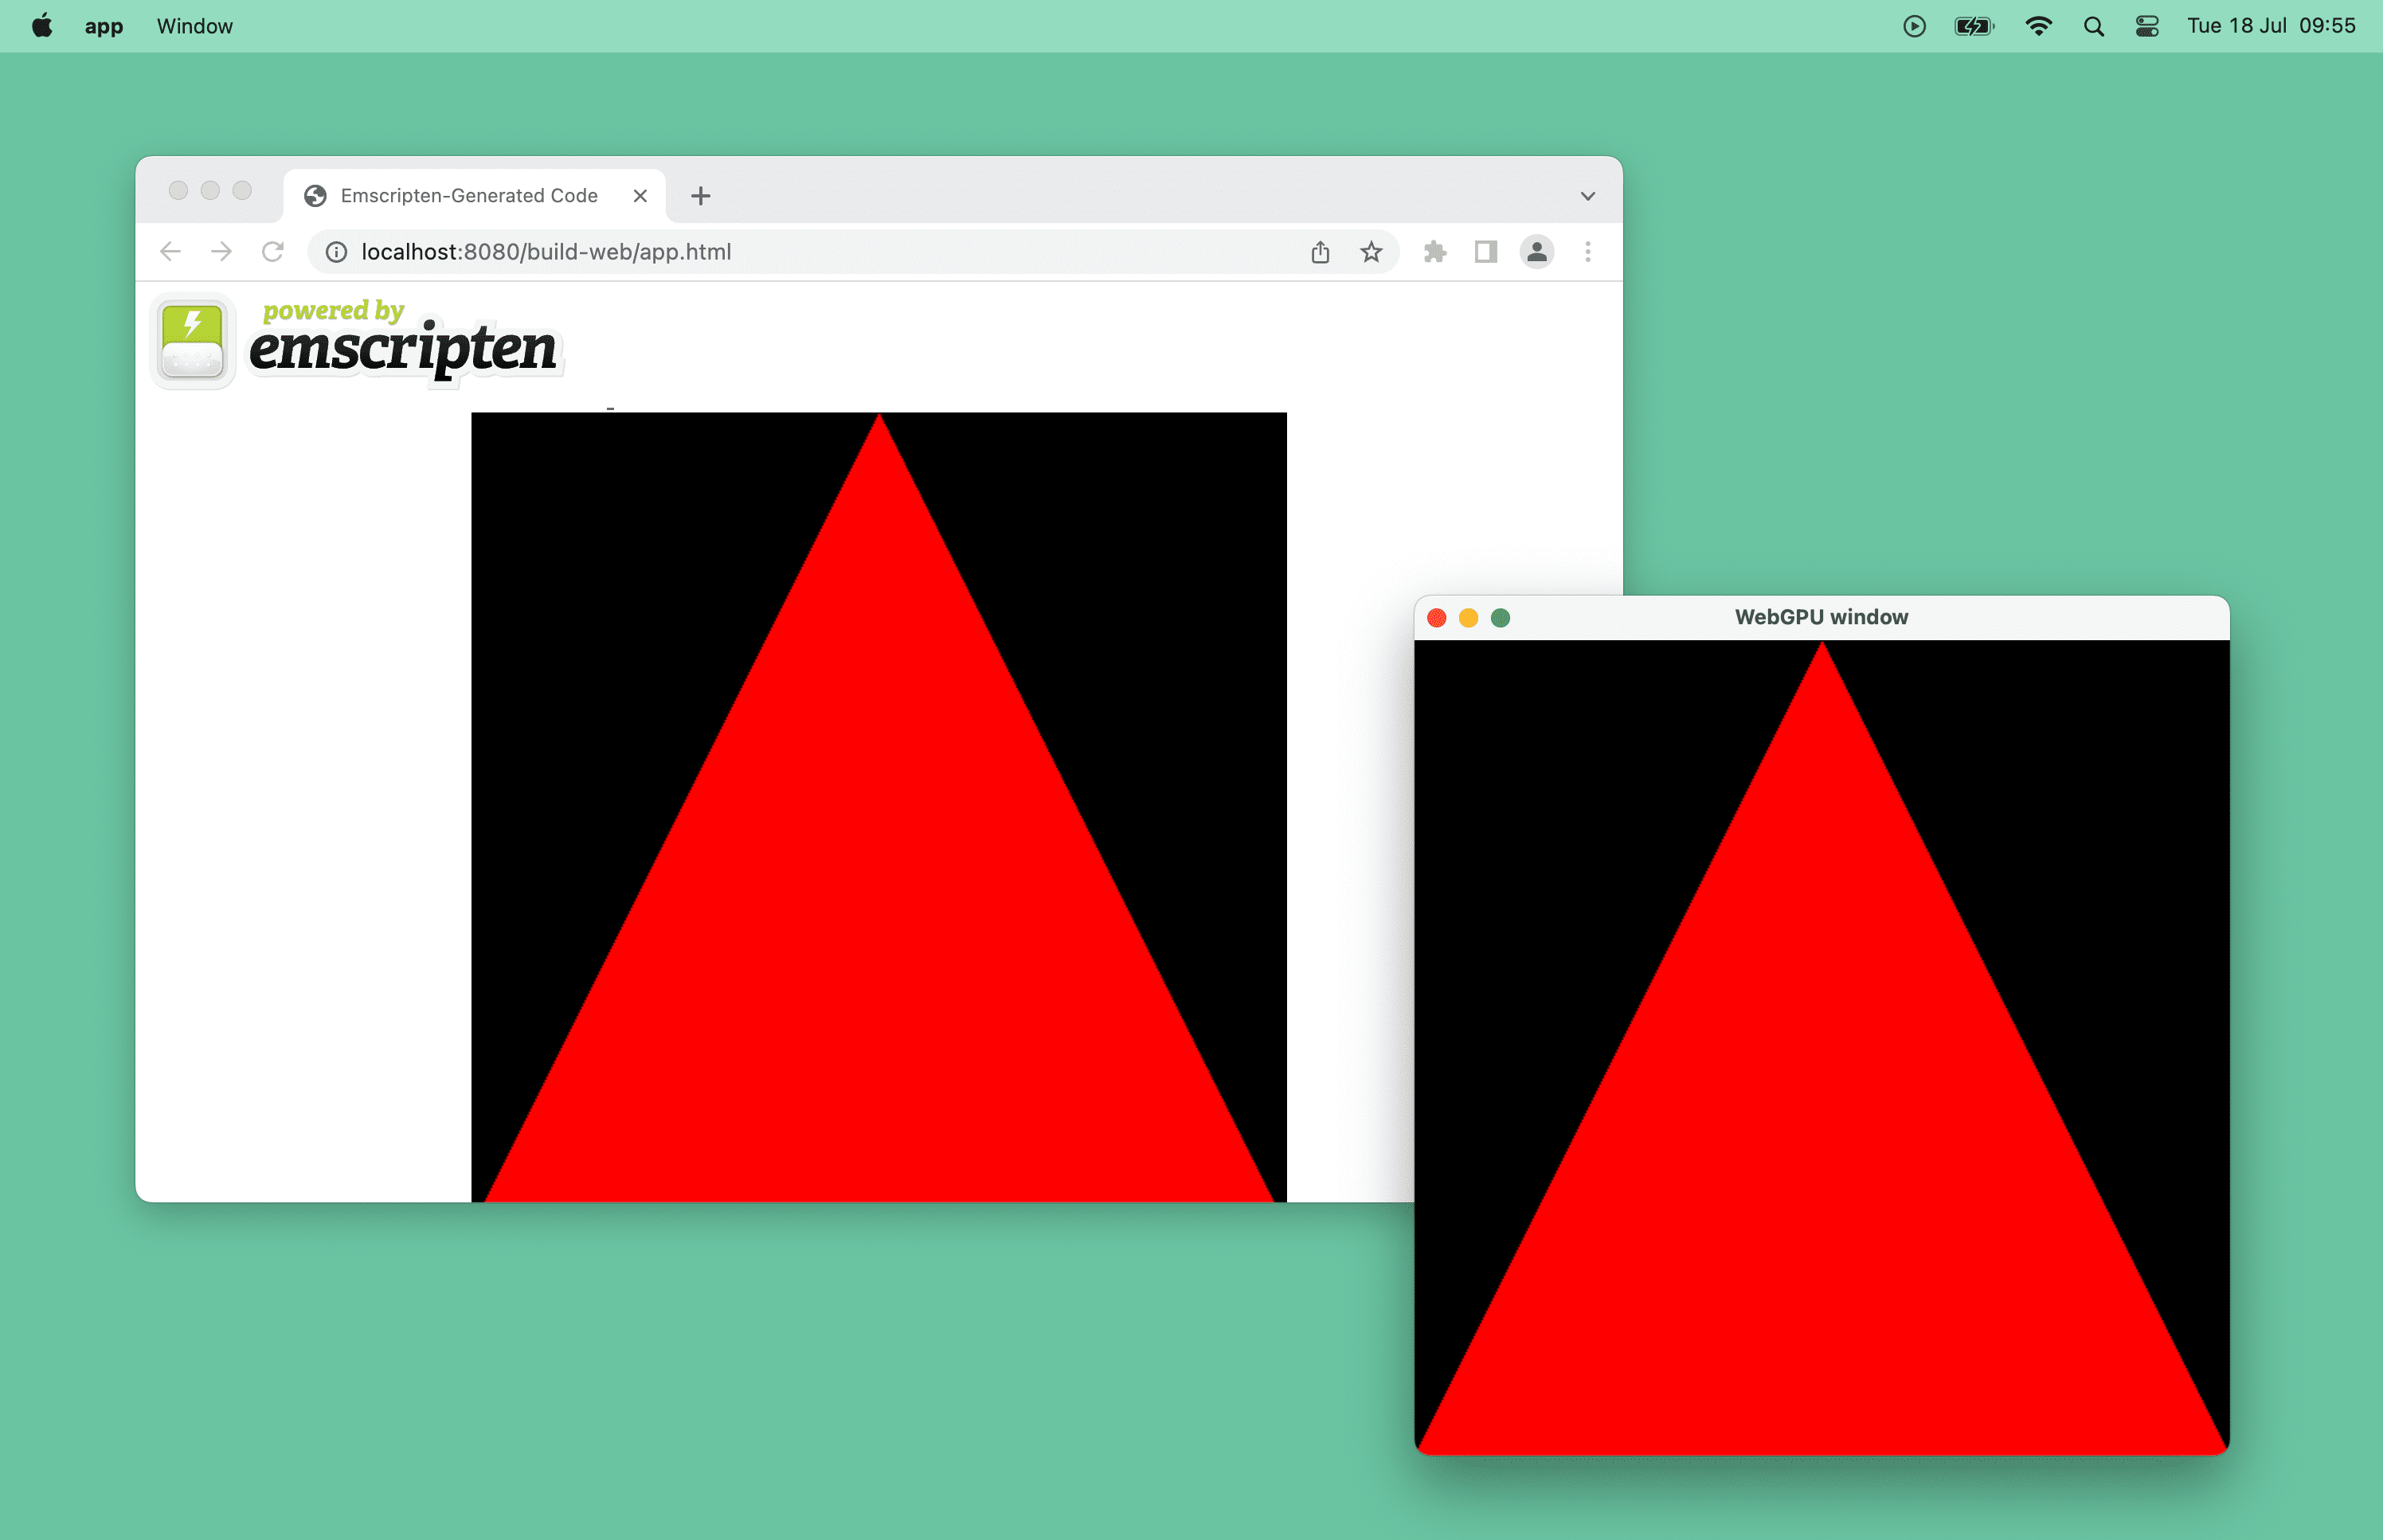 Zrzut ekranu przedstawiający czerwony trójkąt z technologią WebGPU w oknie przeglądarki i okno pulpitu w systemie macOS.